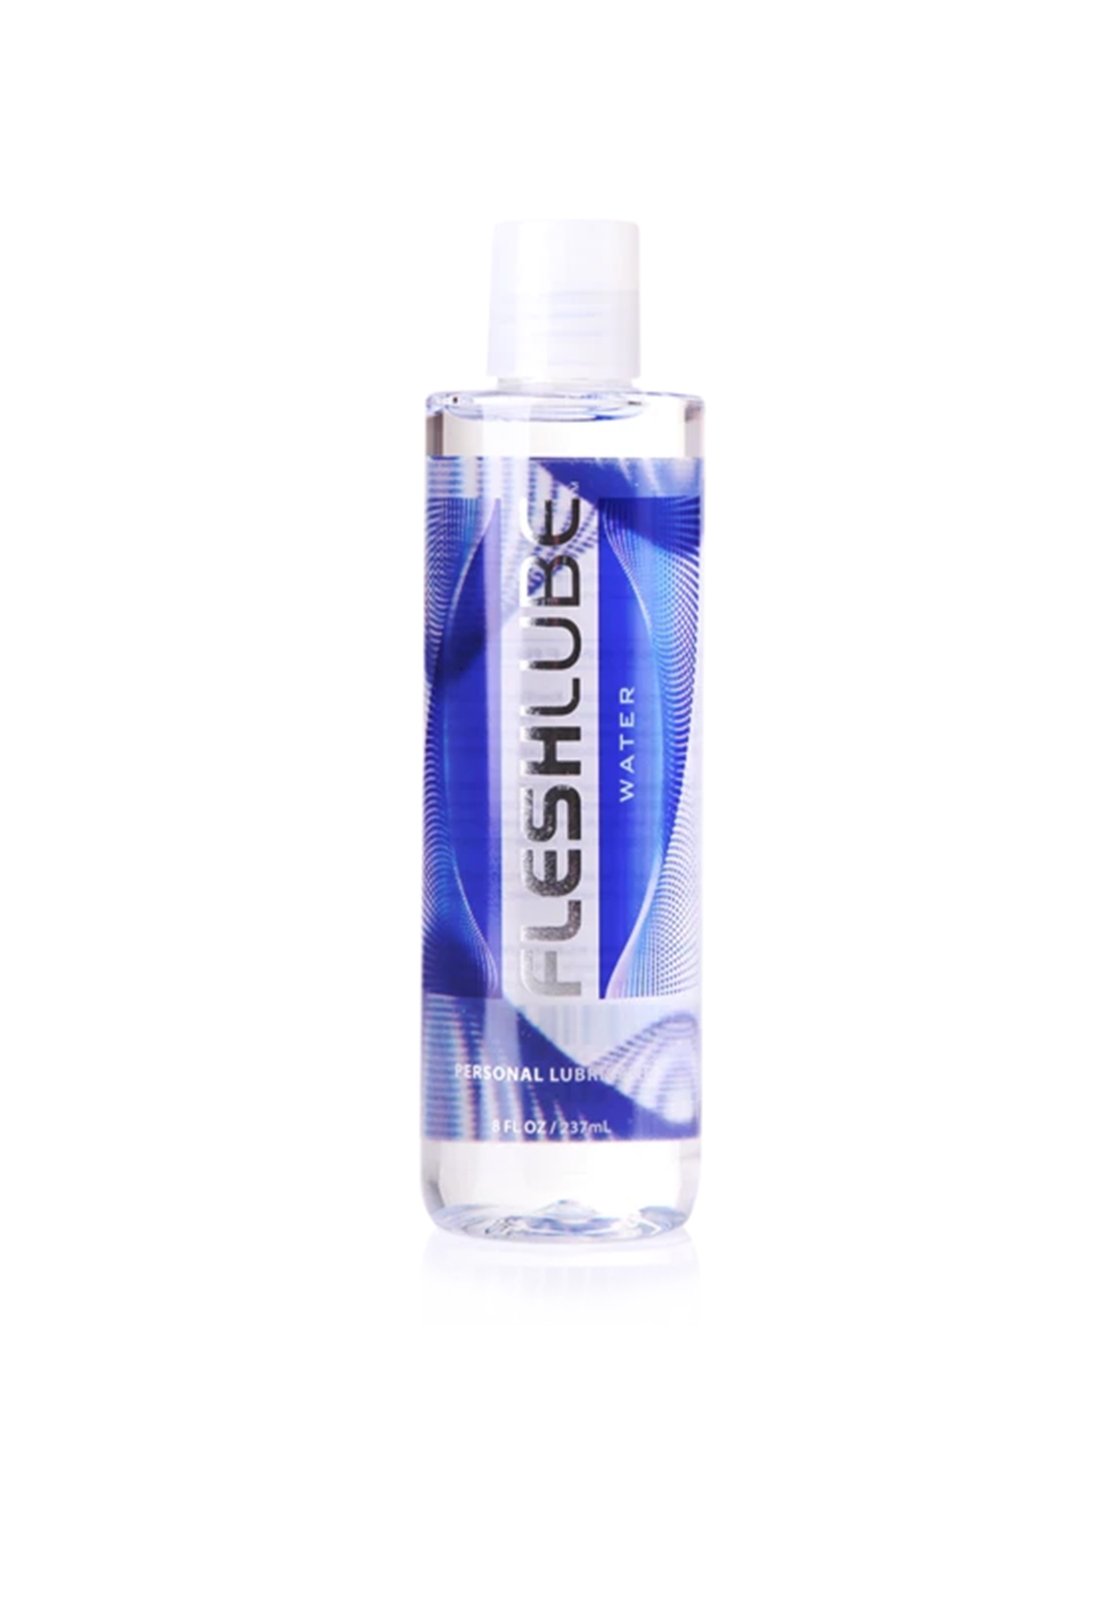 Fleshlube 250 ml | Water